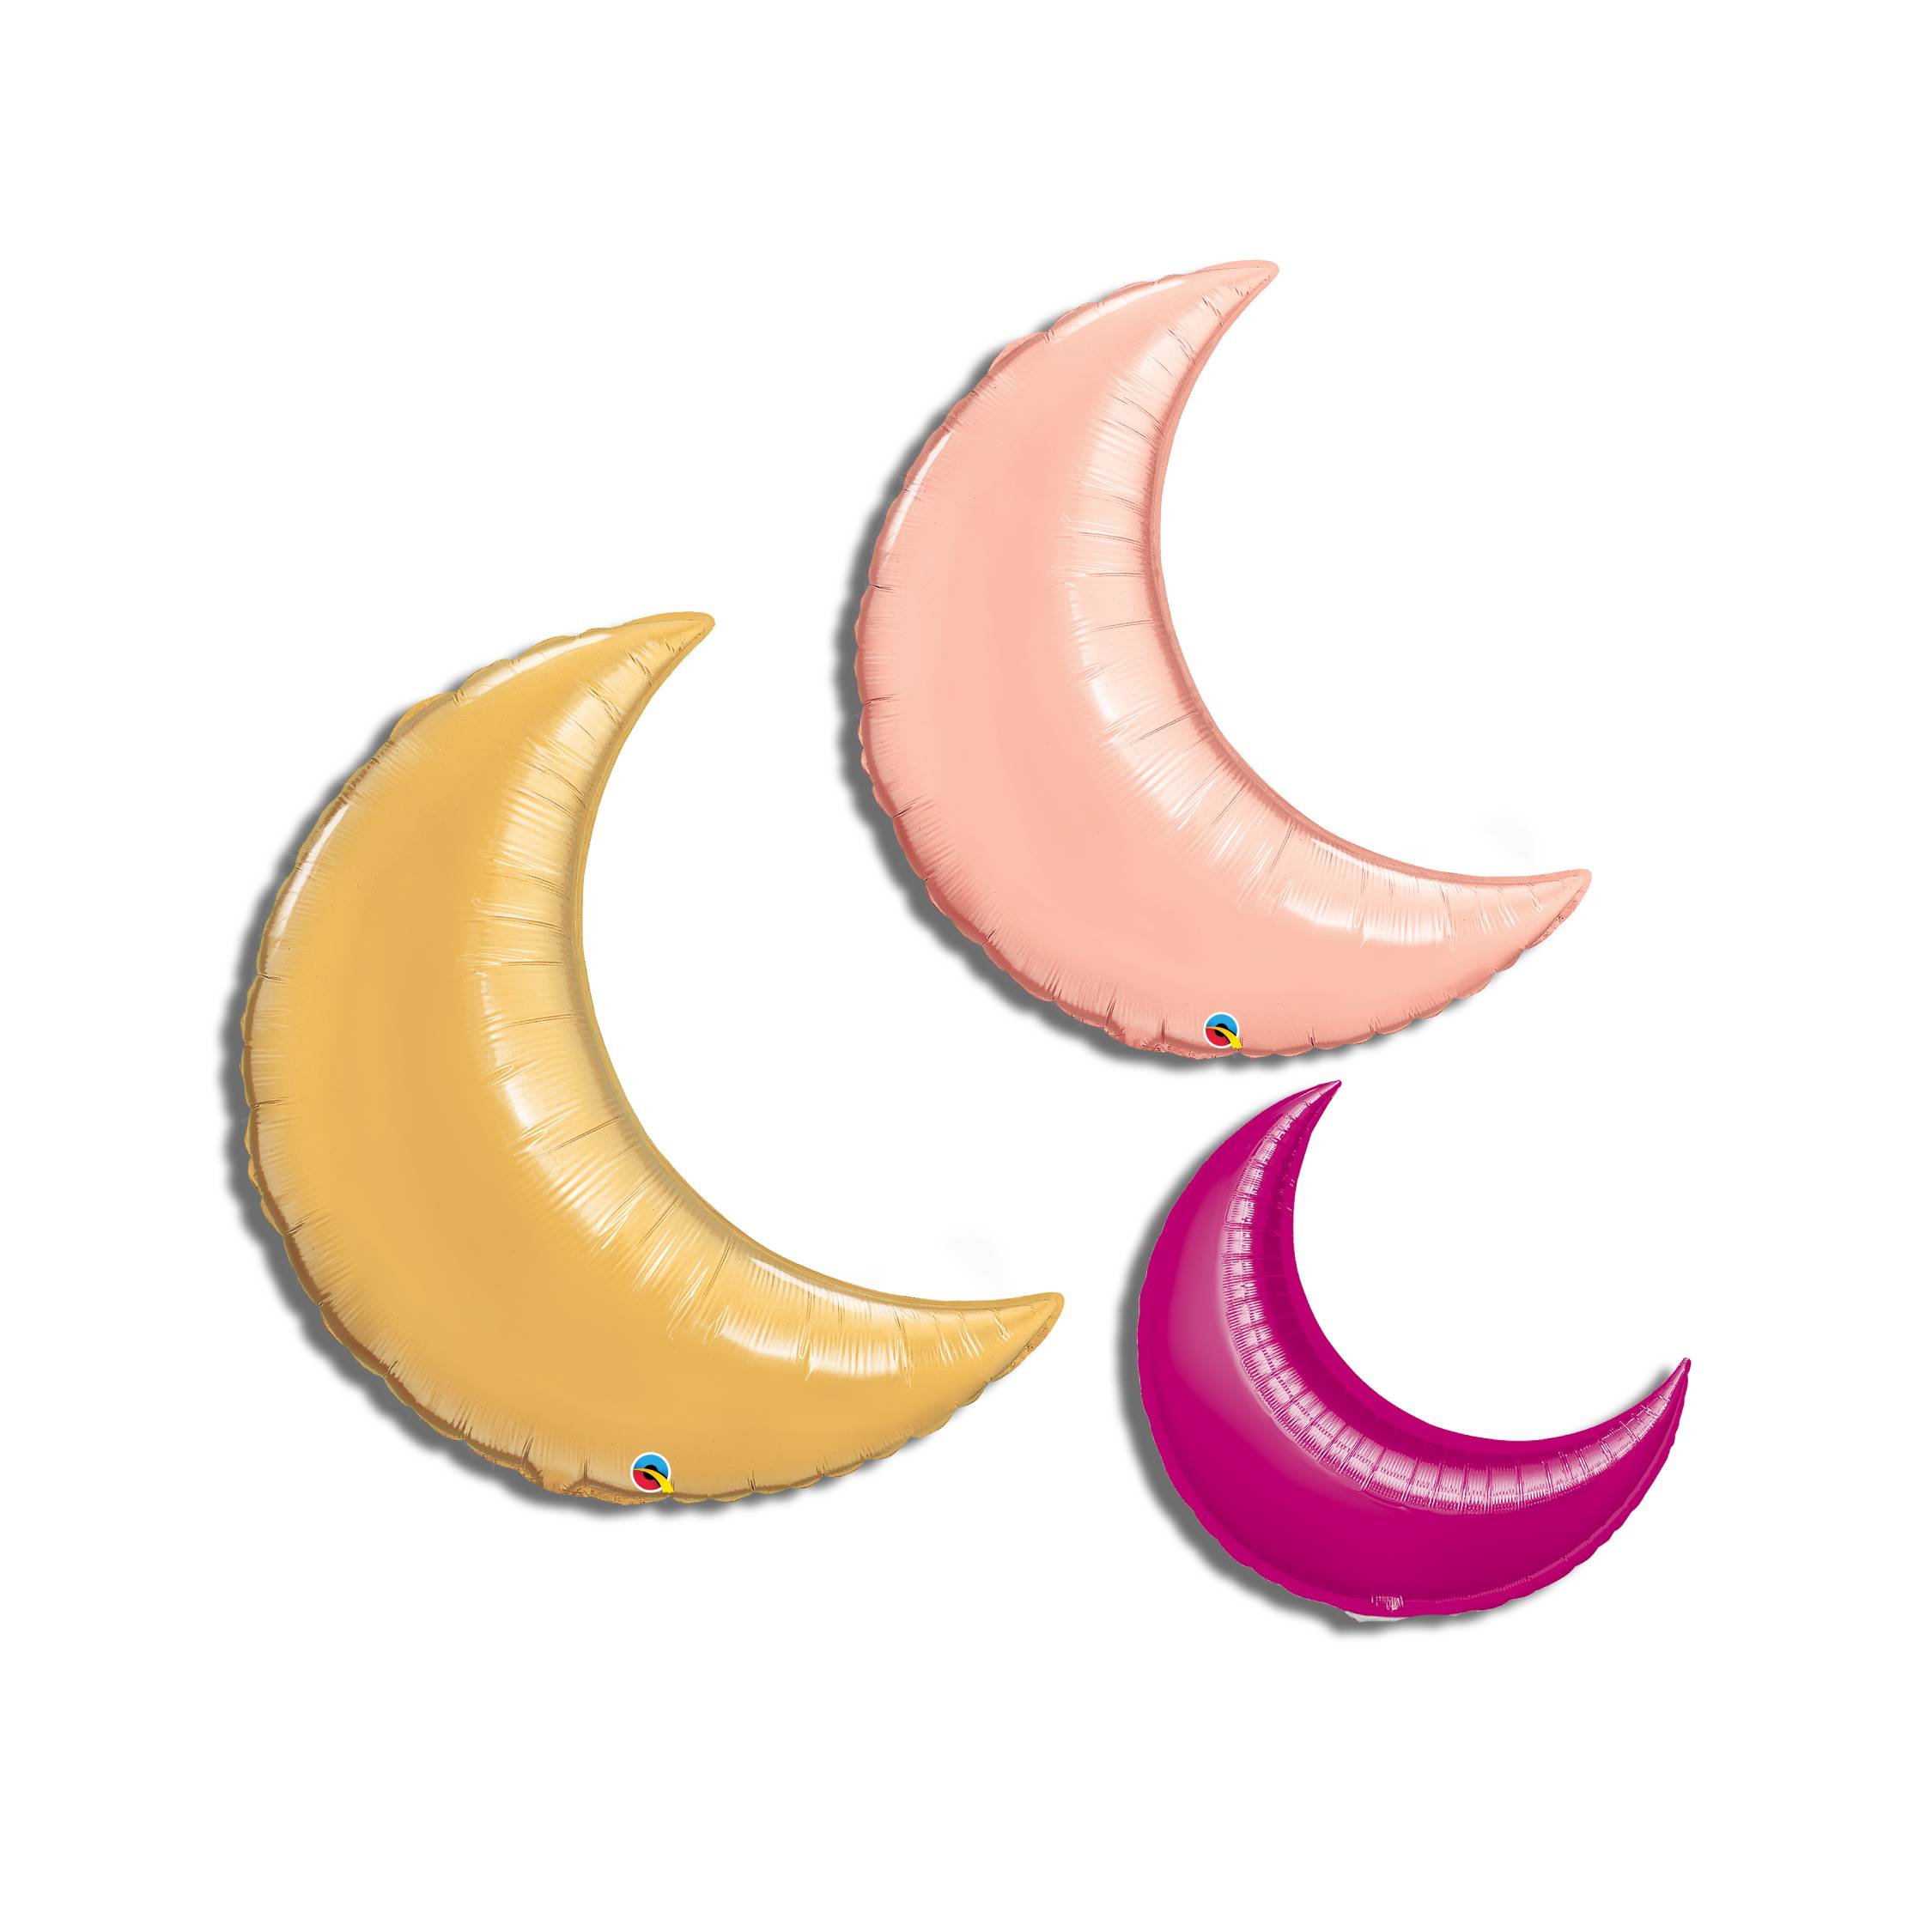 Moons/Crescents